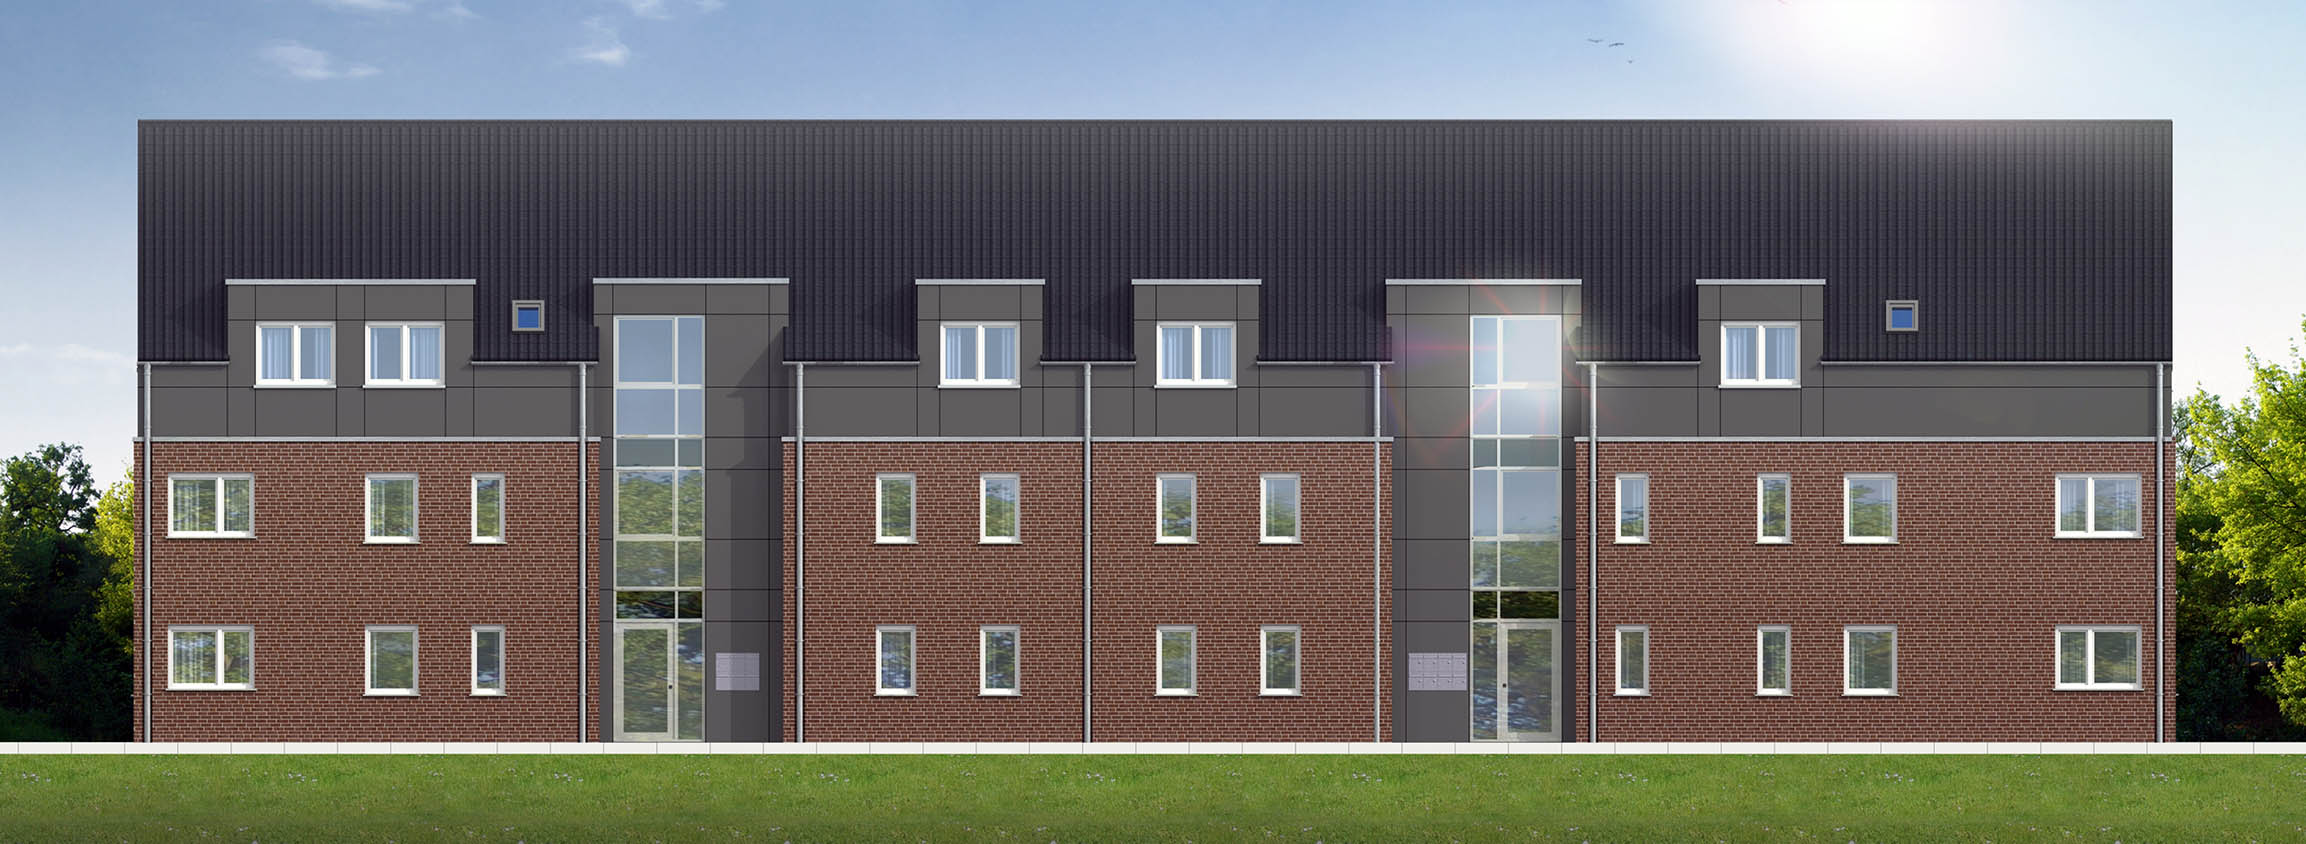 2D-Architekturvisualisierungen der Eingangsseite  von Mehrfamilienhaus gerendert in 2,5D für Bauunternehmen H+F Hilbers-Bau und Handelsges. mbH & Co. KG Oststraße 6, 48301 Nottuln (Jahr 2018)